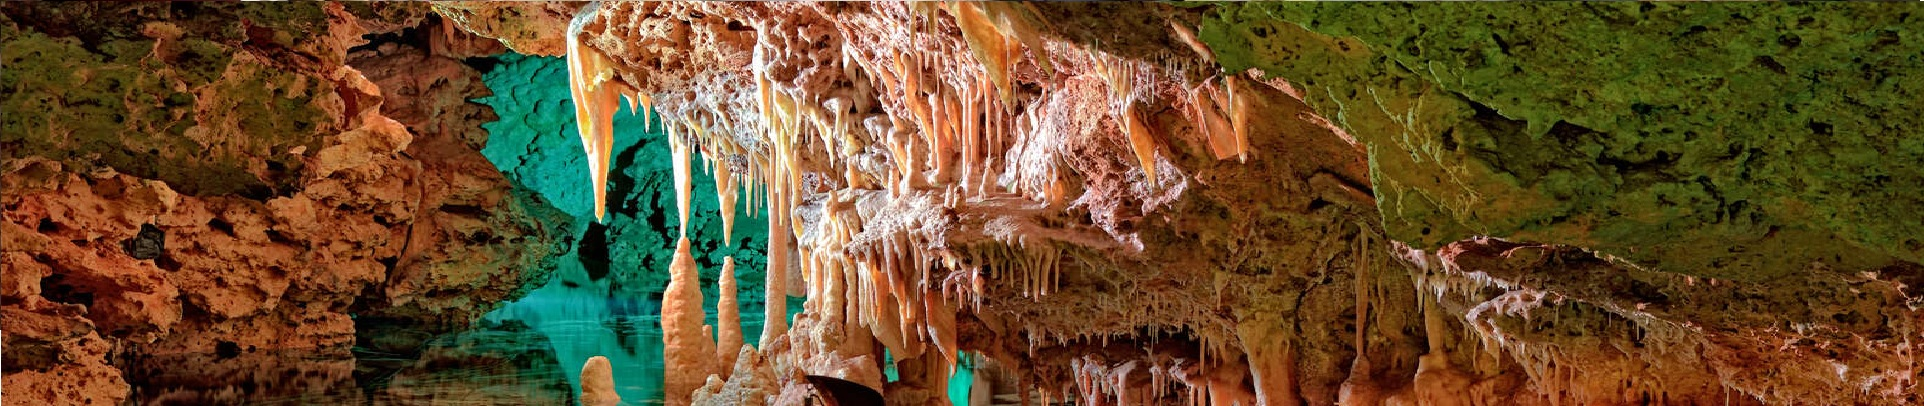 Cuevas del Hams Mallorca